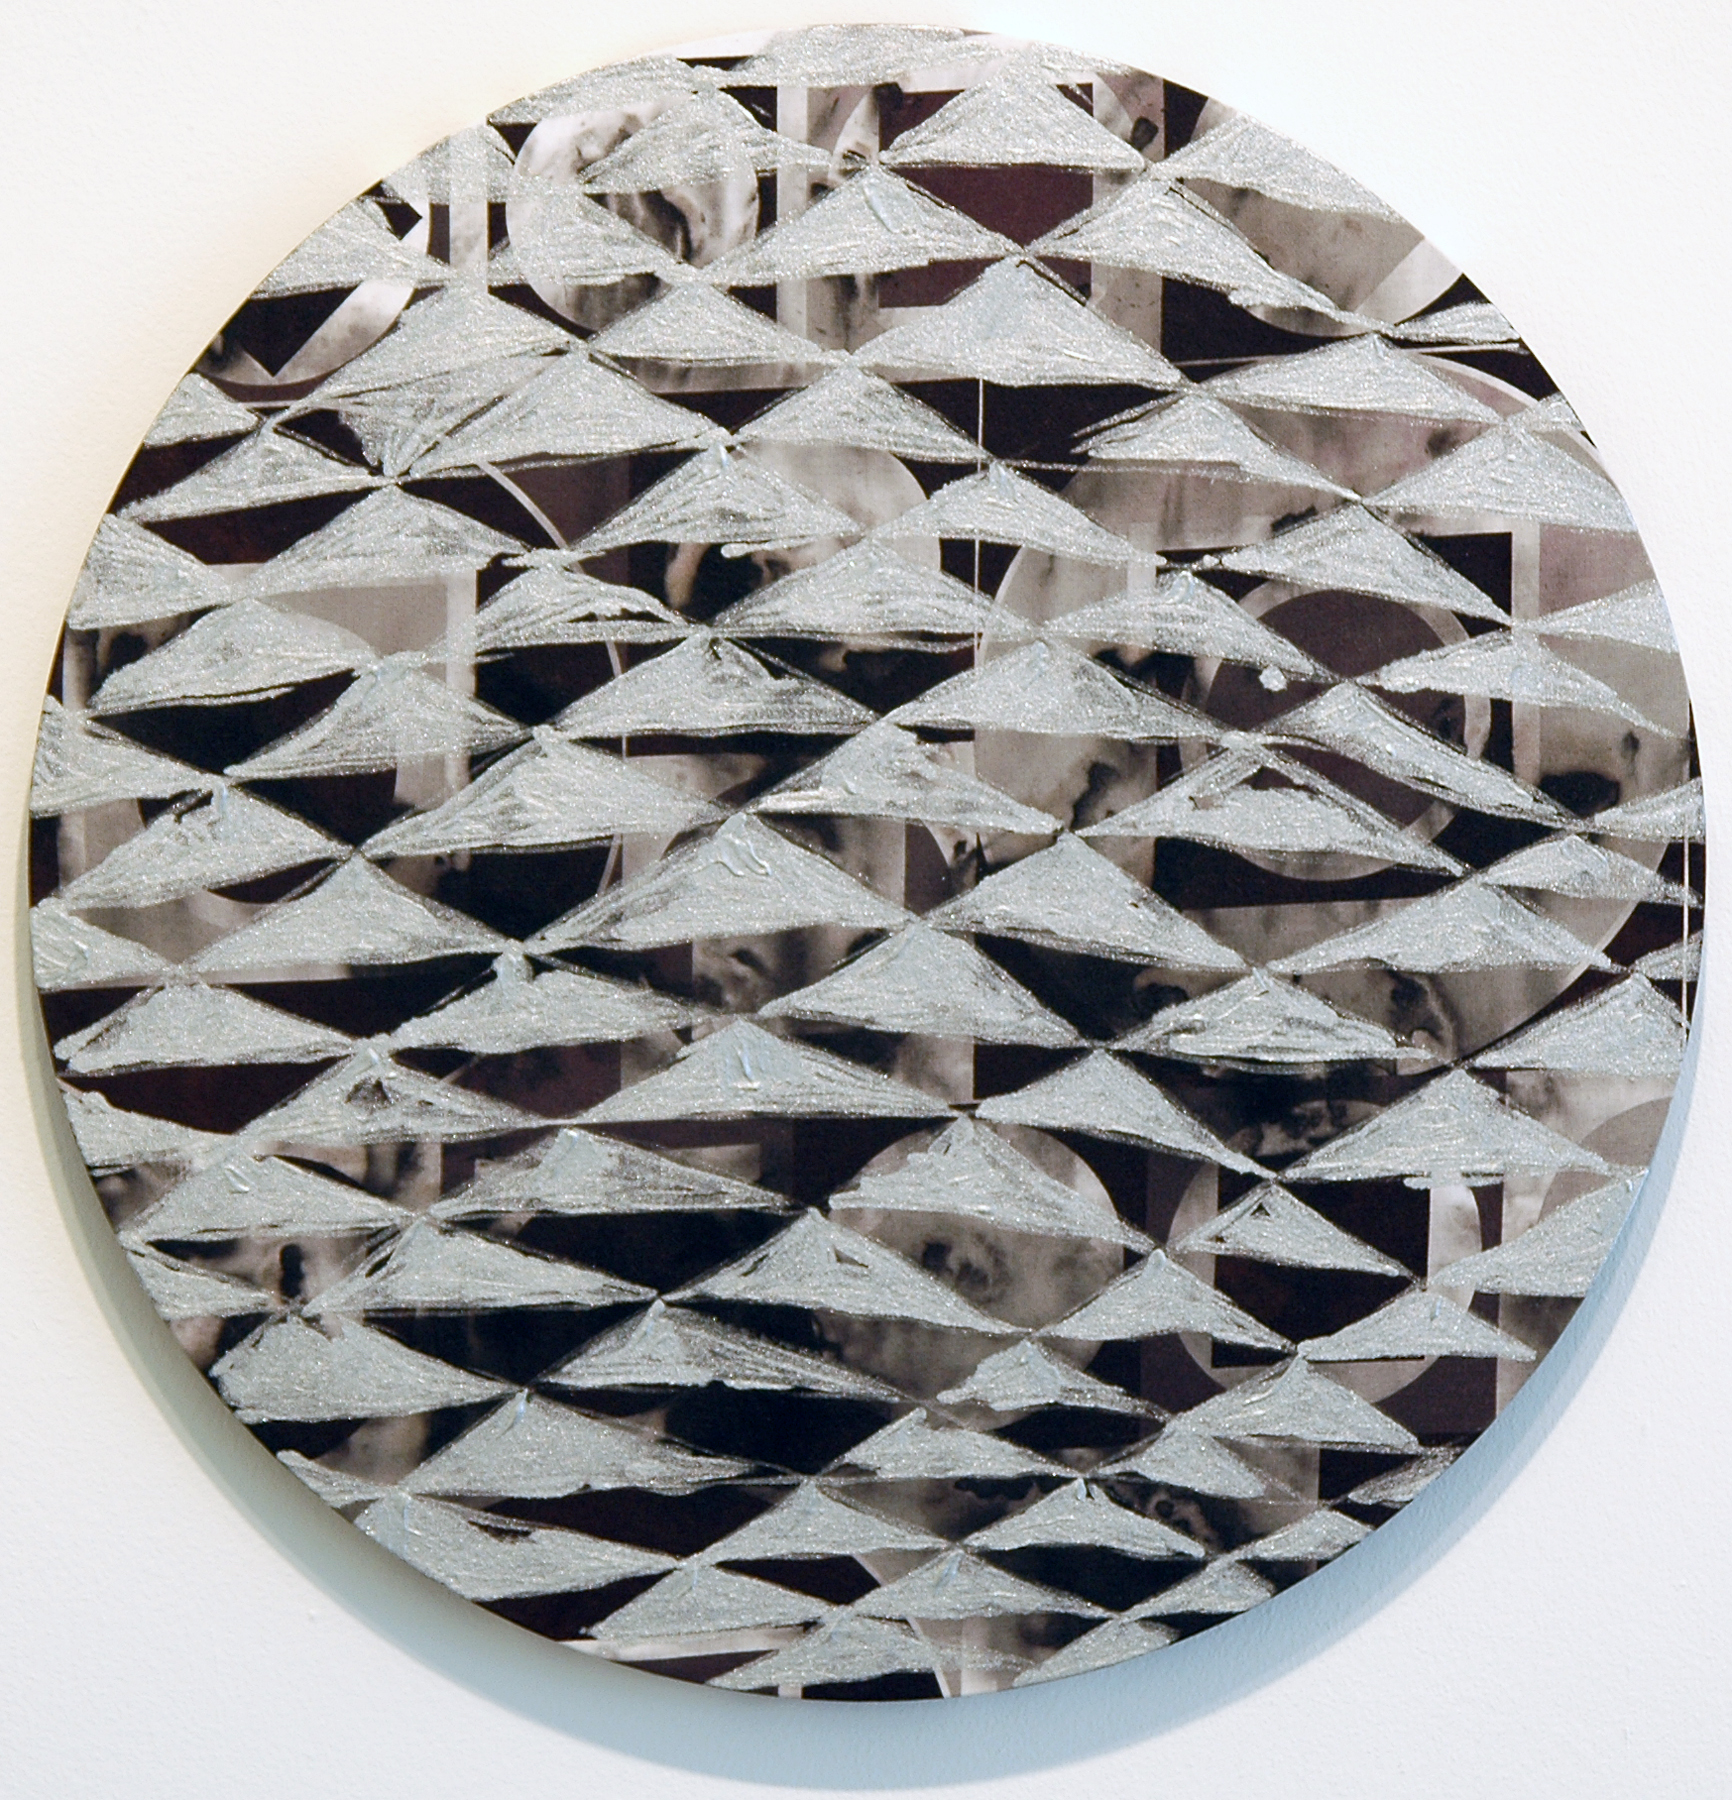   PAMELA JORDEN   Smoke,&nbsp; oil on fabric, 18.375" diameter, 2011 